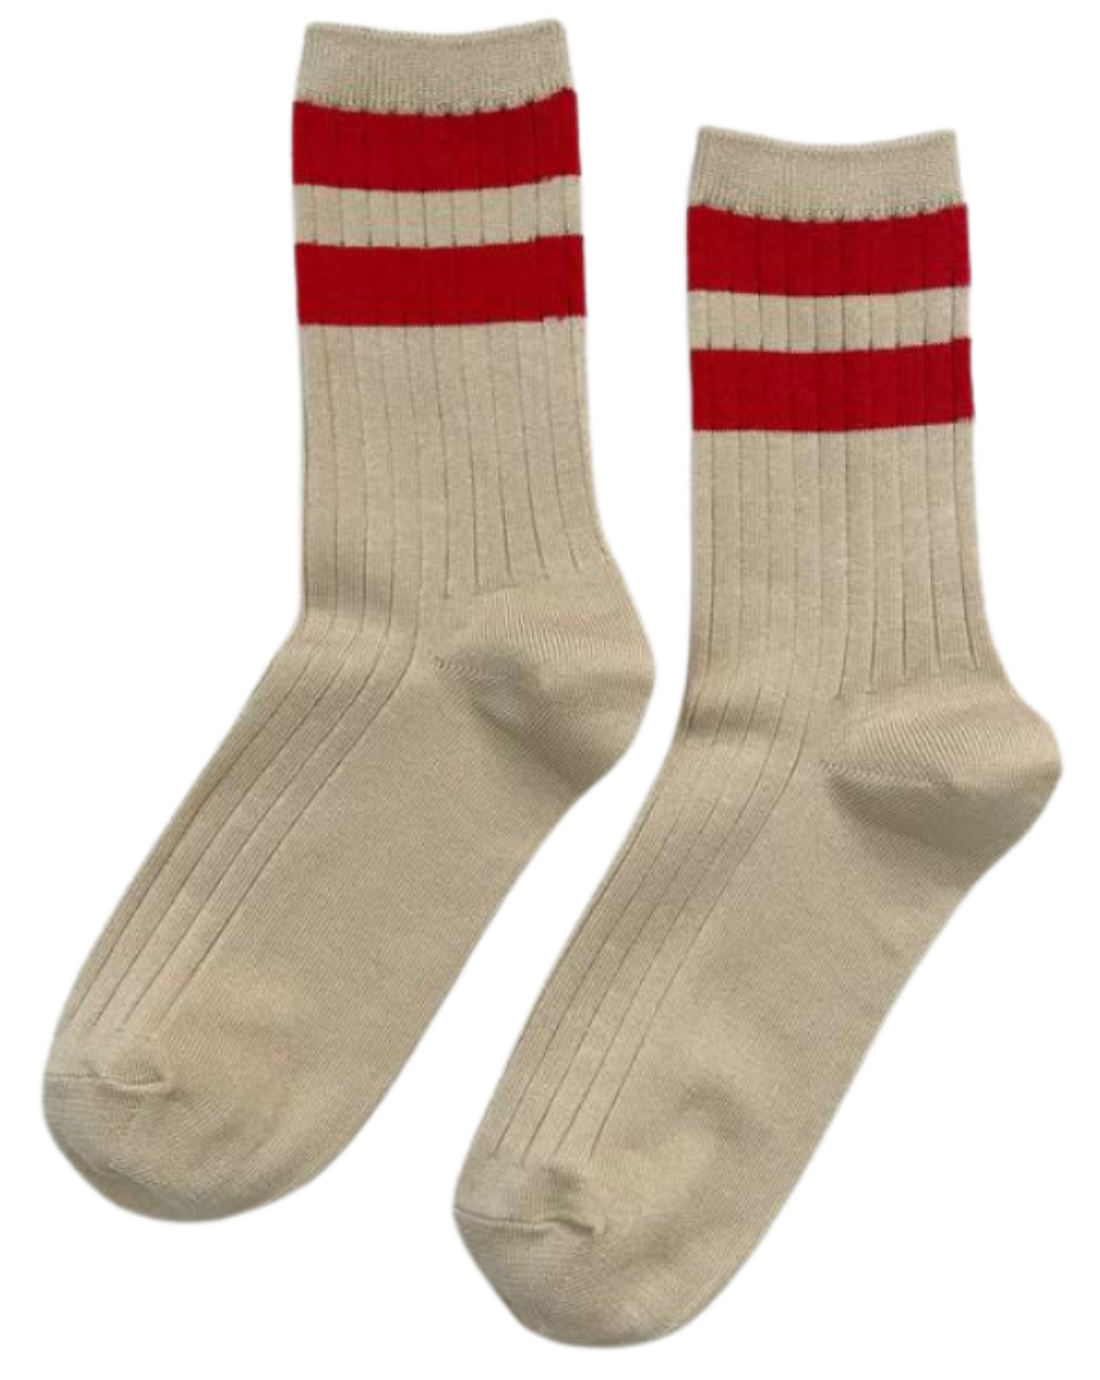 Varsity Her Socks, red